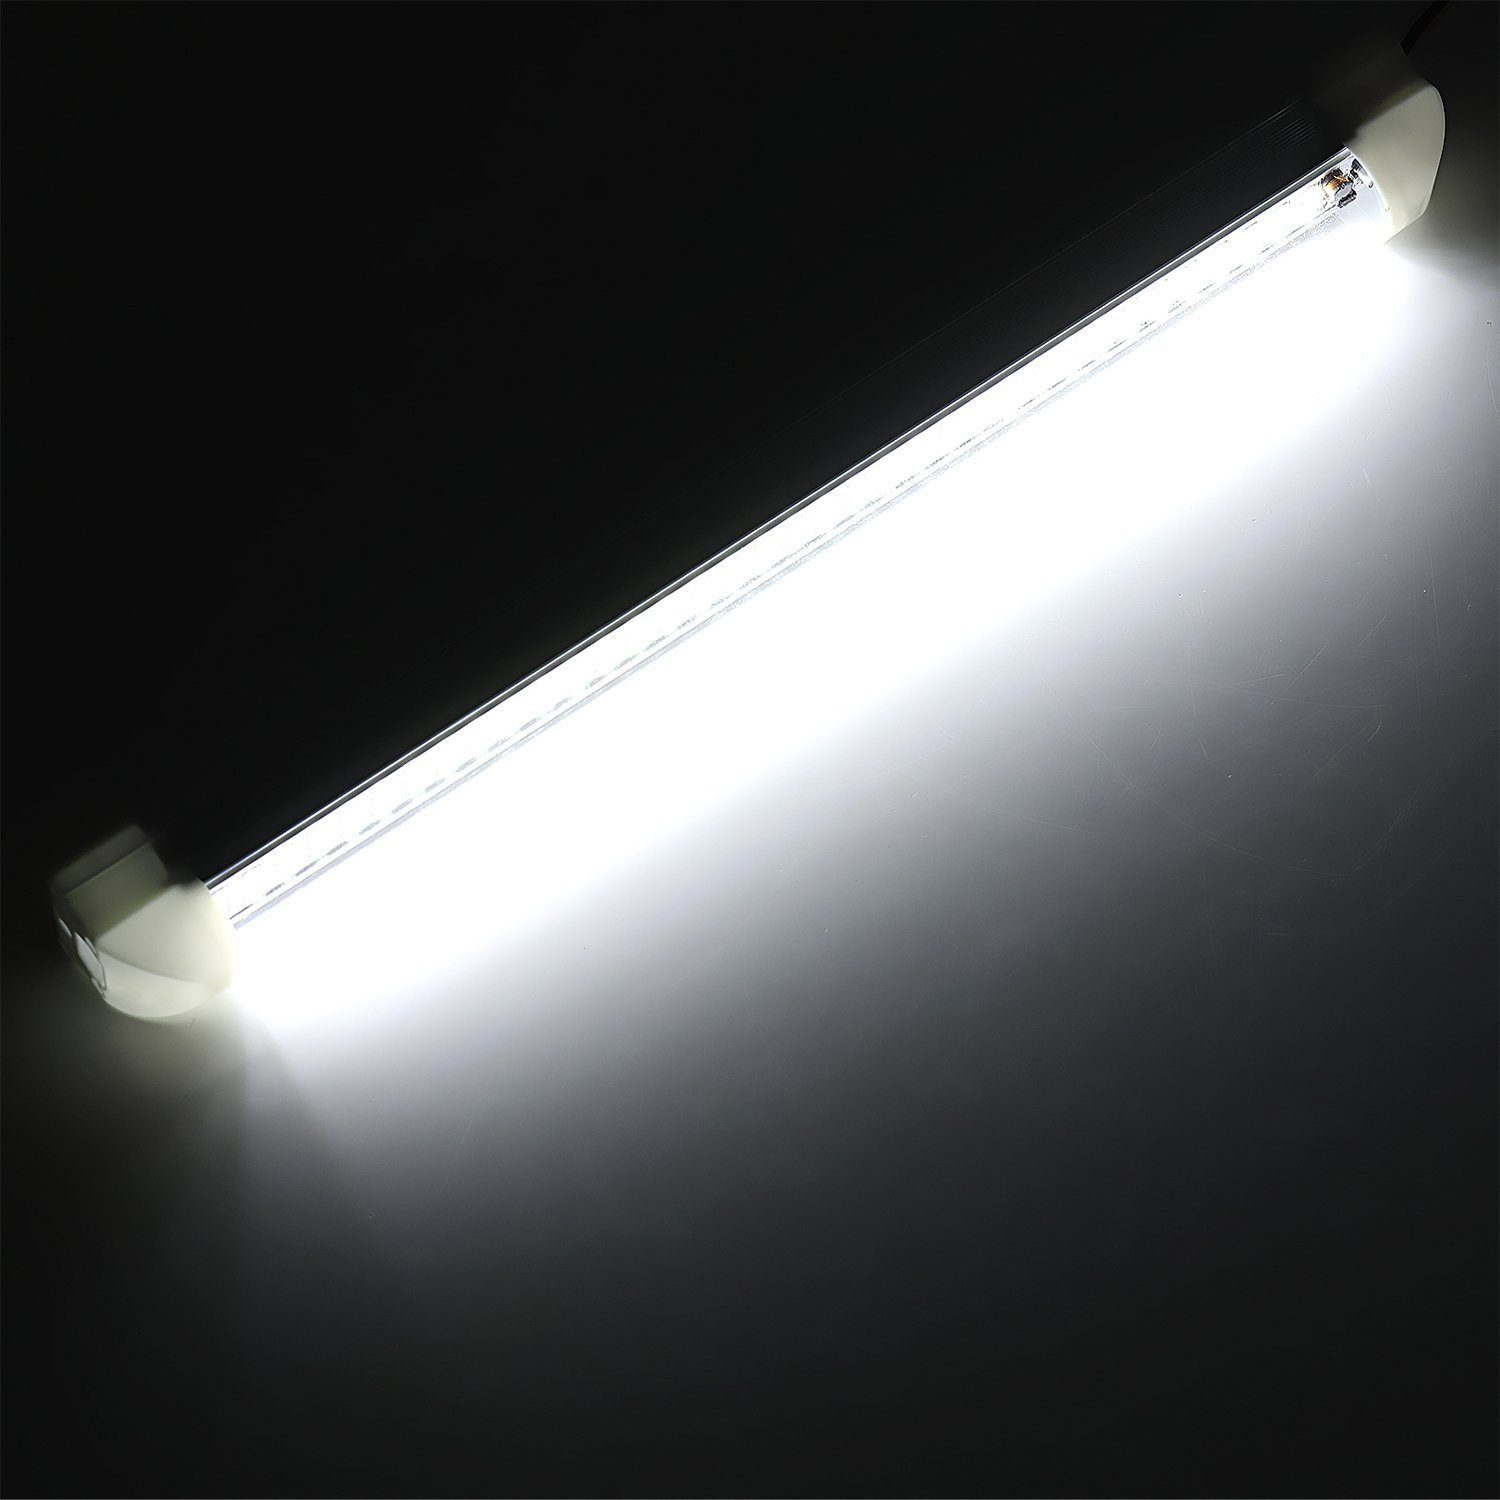 LKW LED Leiste 108LED Leuchtet Wohnmobile LED-Streifen für mit Schalter, Leiste Innenlichtleiste 12V EIN/ Van Auto iscooter Küche Weiß Leuchtet AUS